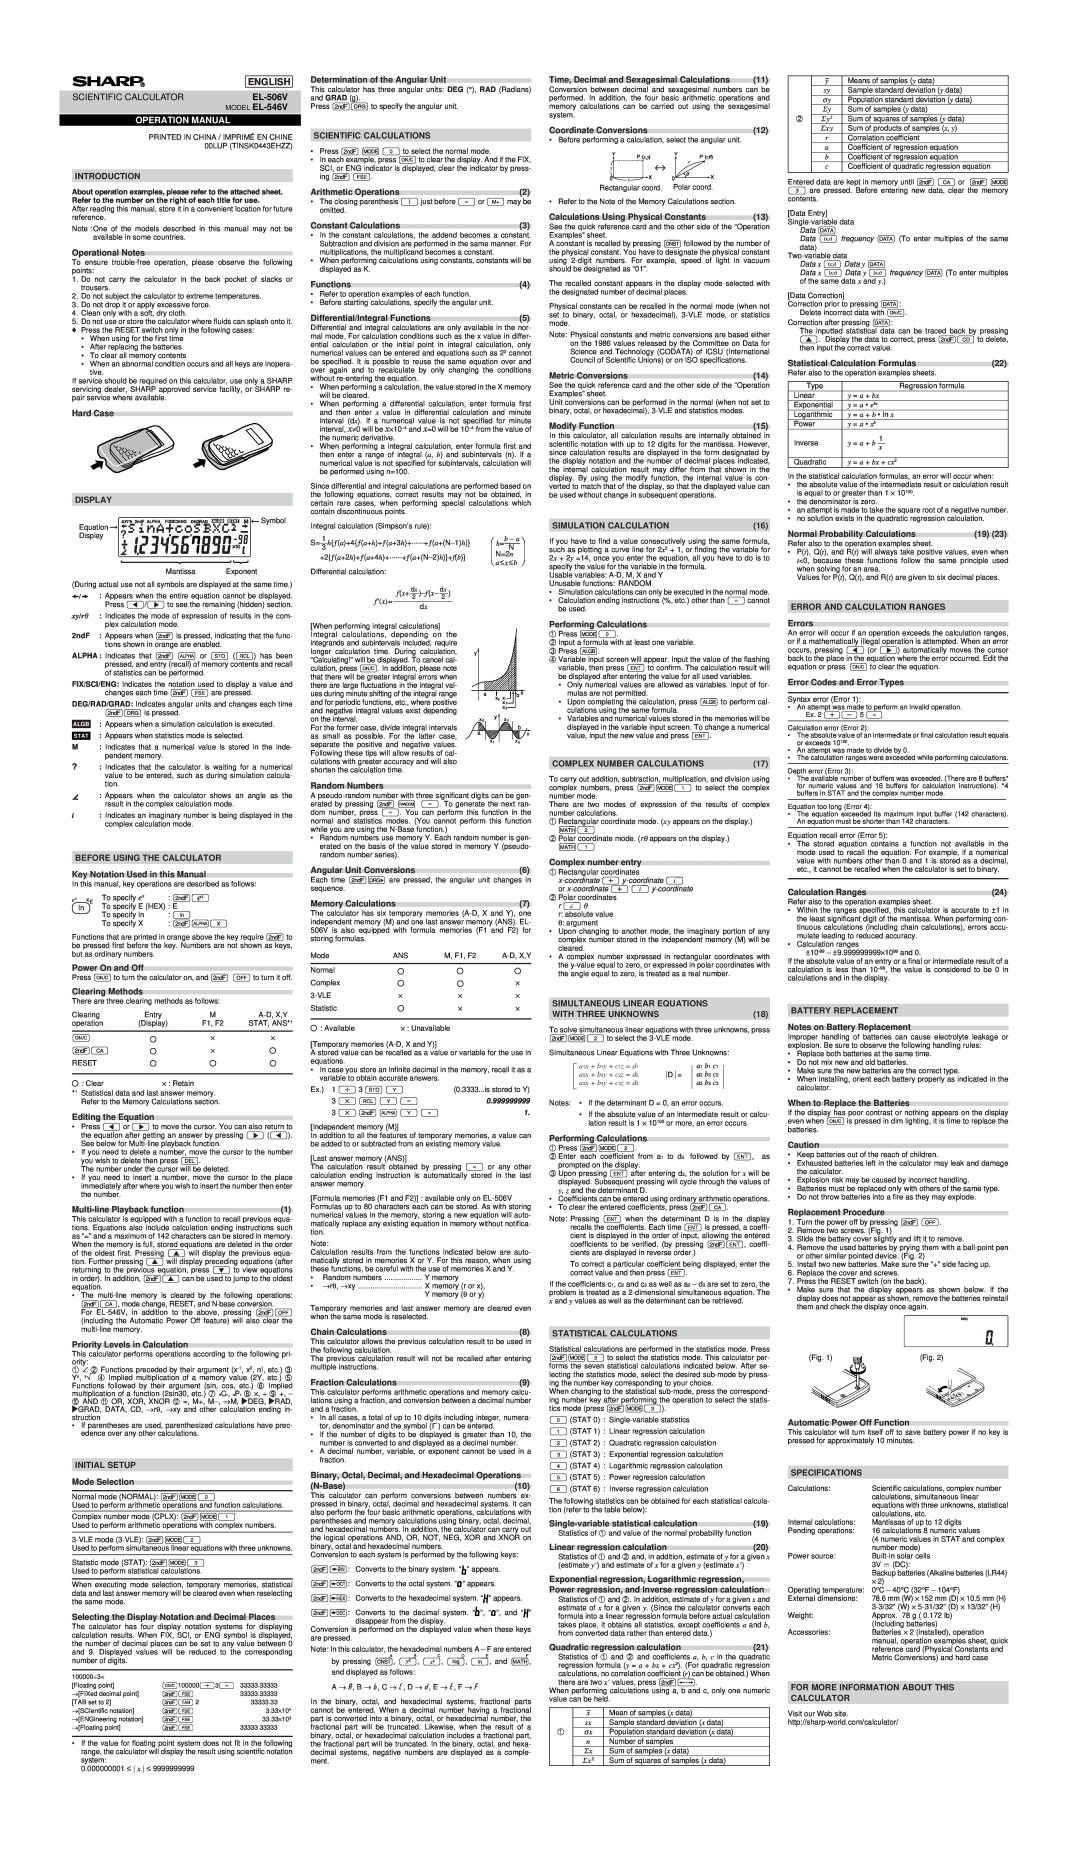 Sharp EL-506V, EL-546V specifications English, Operation Manual 